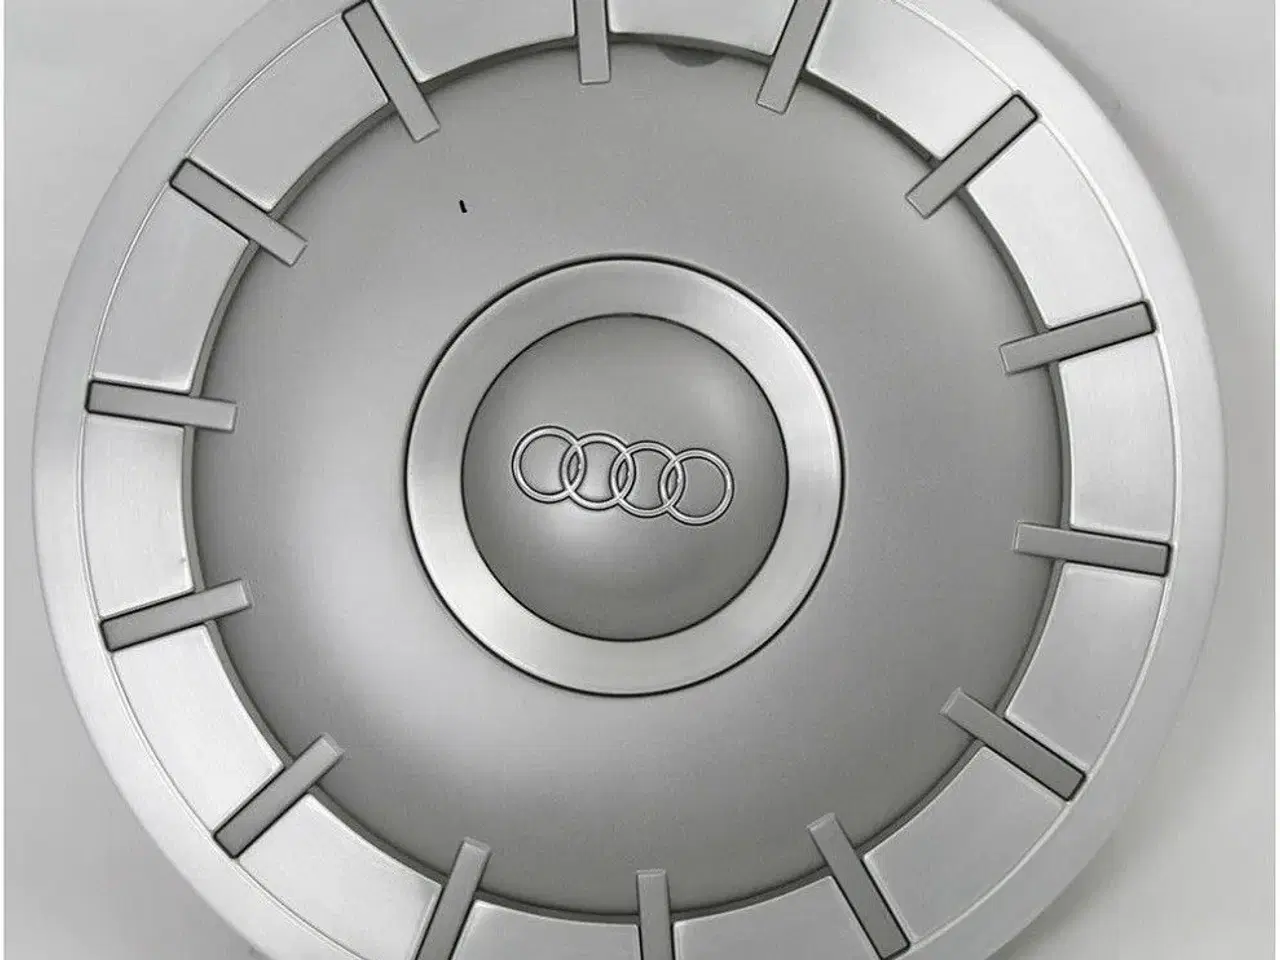 Billede 1 - Hjulkapsler Audi A2 3L søges